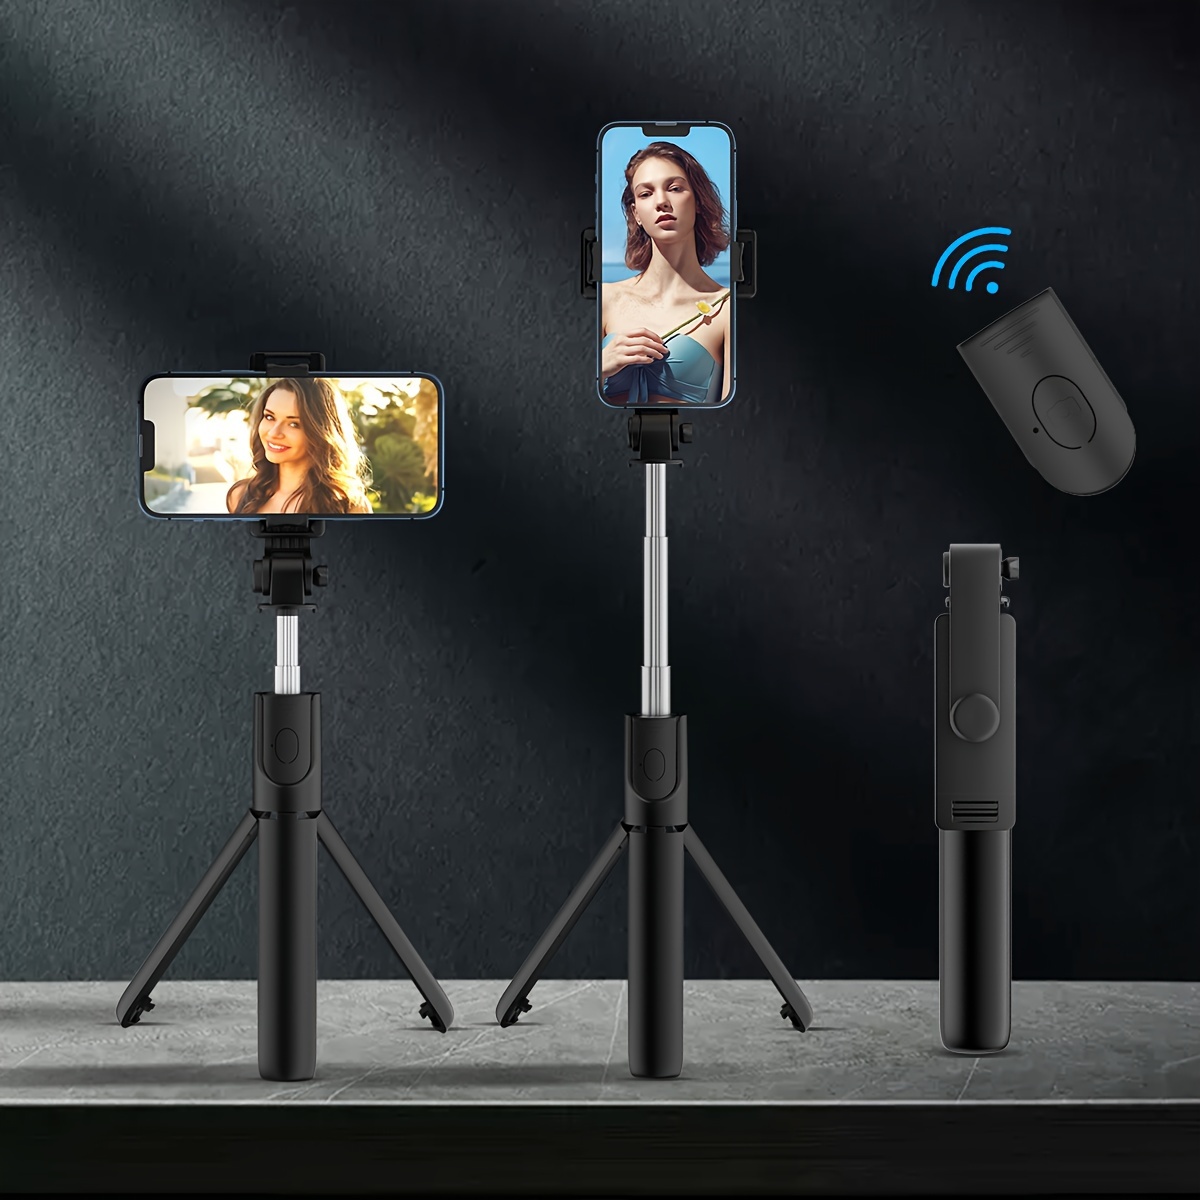 Trípode selfie stick con control remoto, mini trípode para teléfono, 3 en 1  inalámbrico Bluetooth Selfie Stick para dispositivos iOS y Android, palo